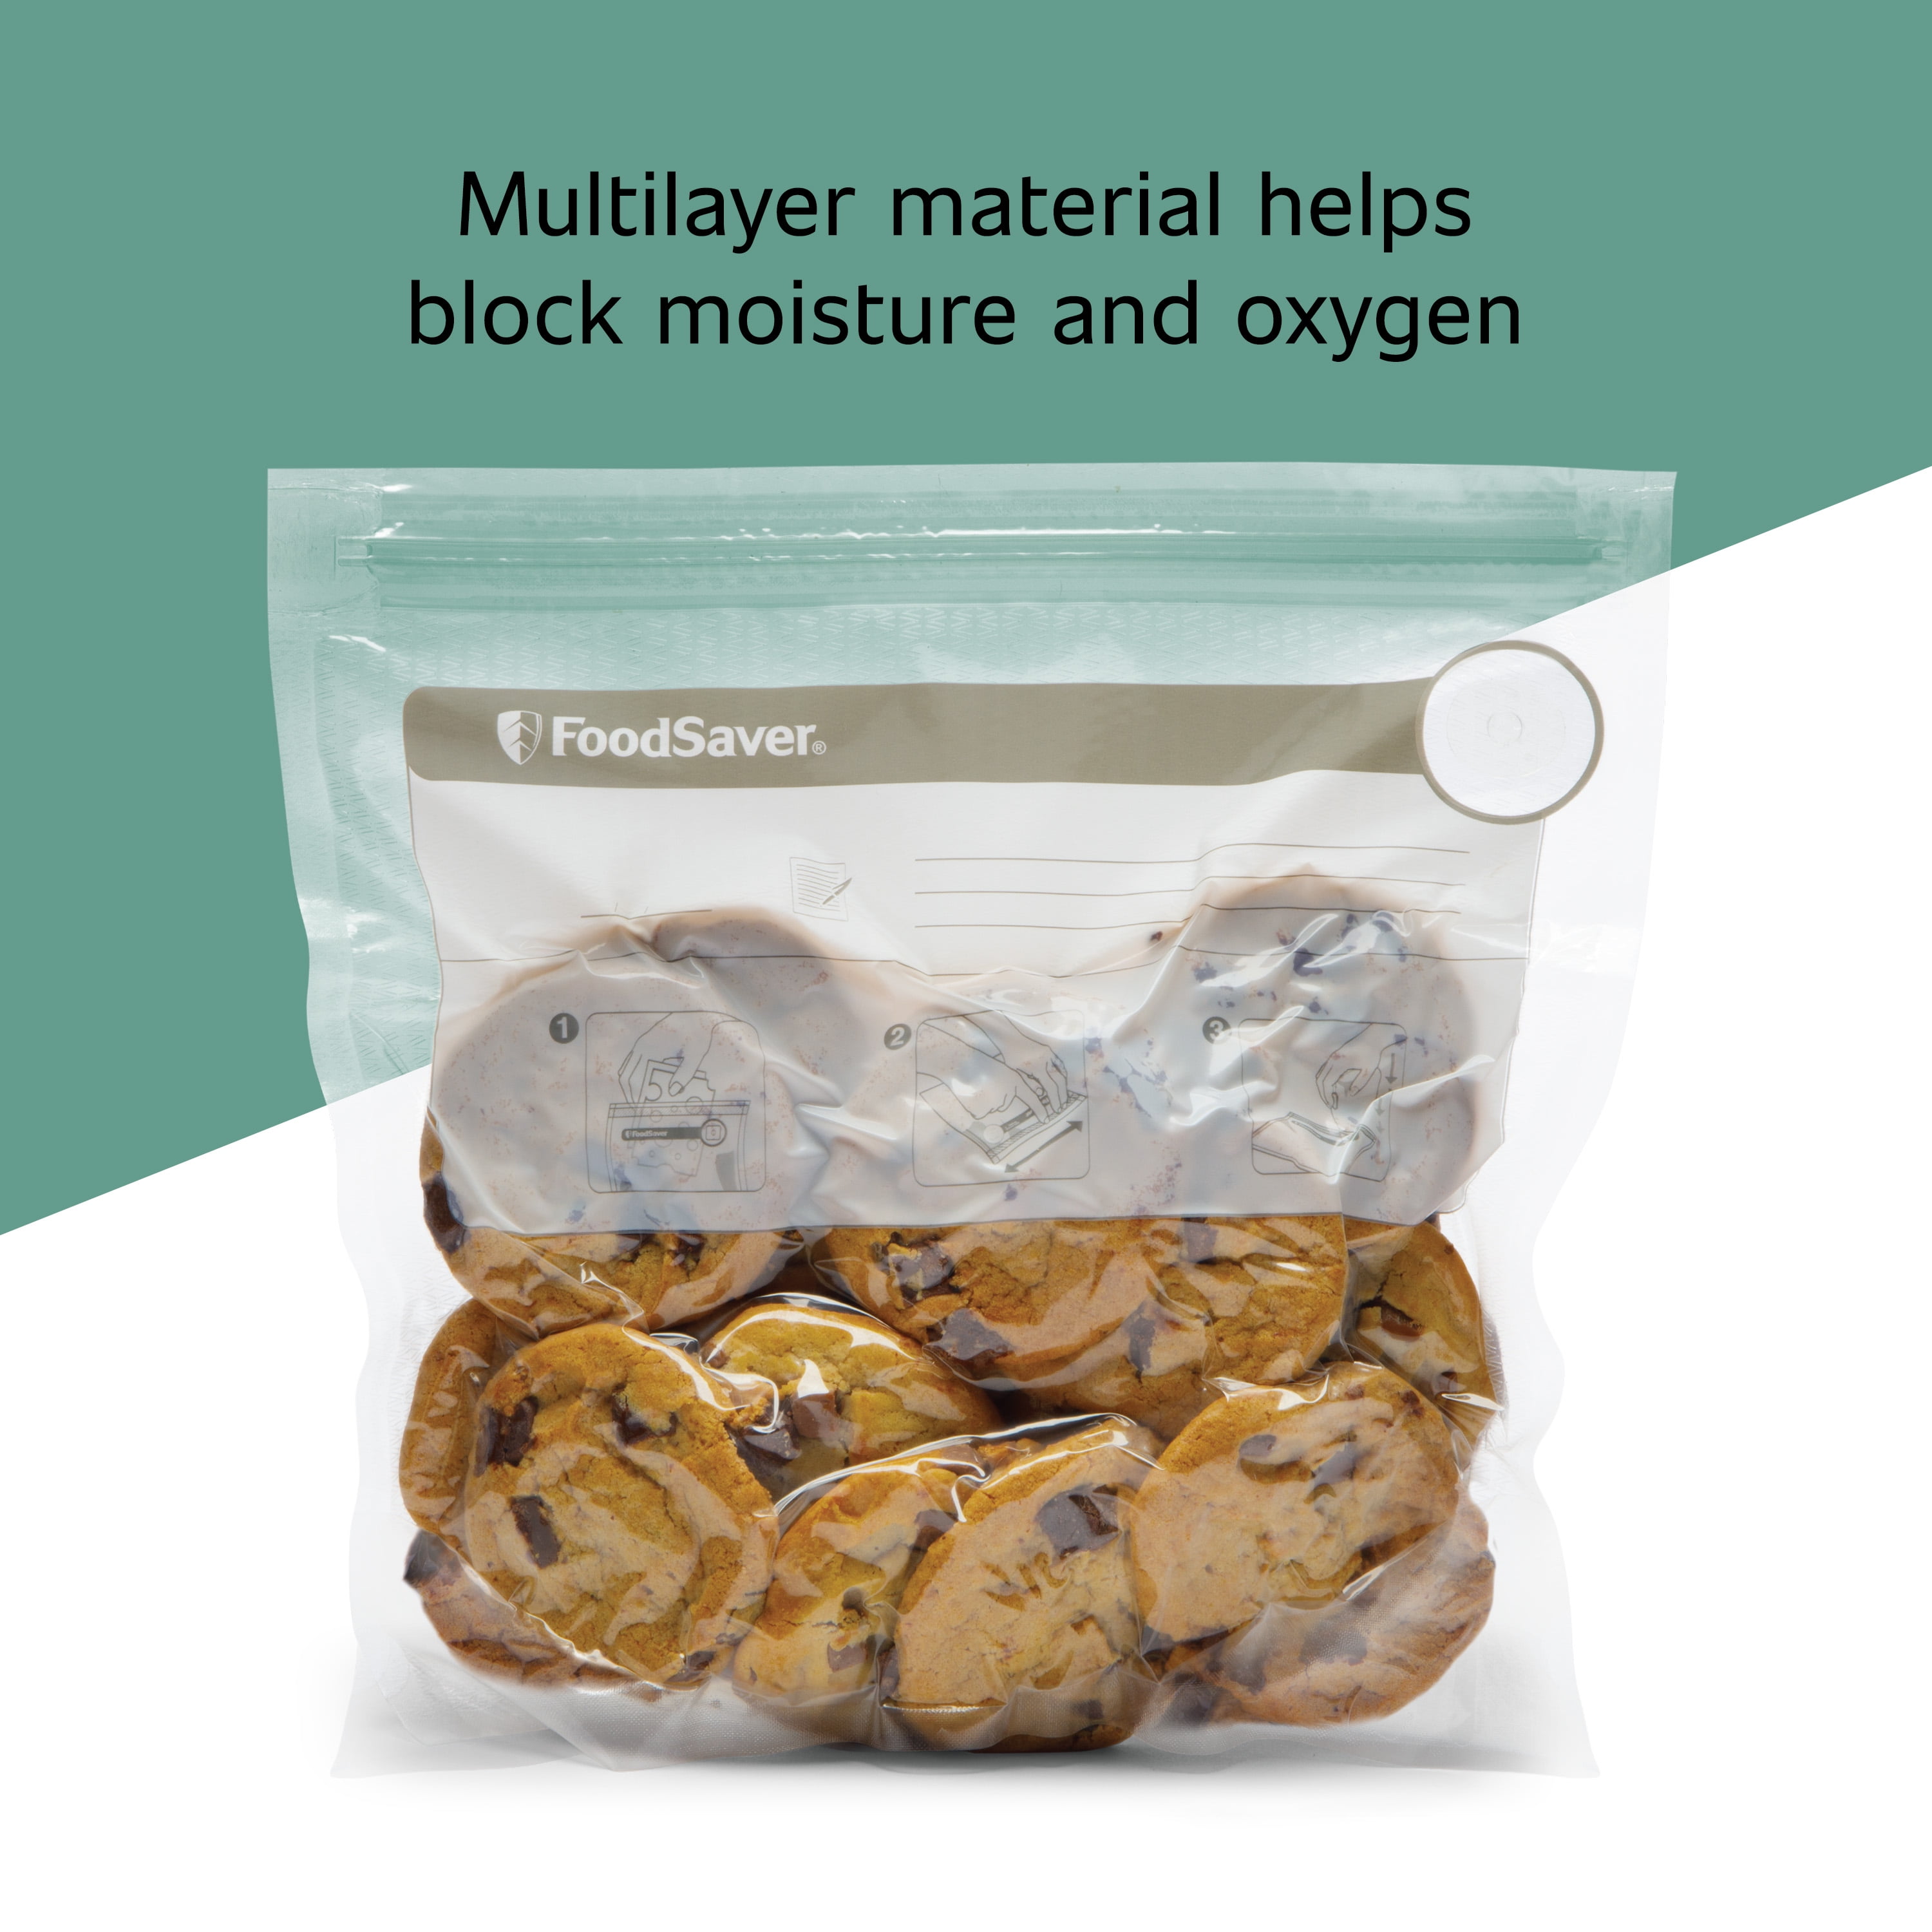 Foodsaver Reusable Gallon Vacuum Zipper Bags - For Use With Foodsaver  Handheld Vacuum Sealers - 8ct : Target